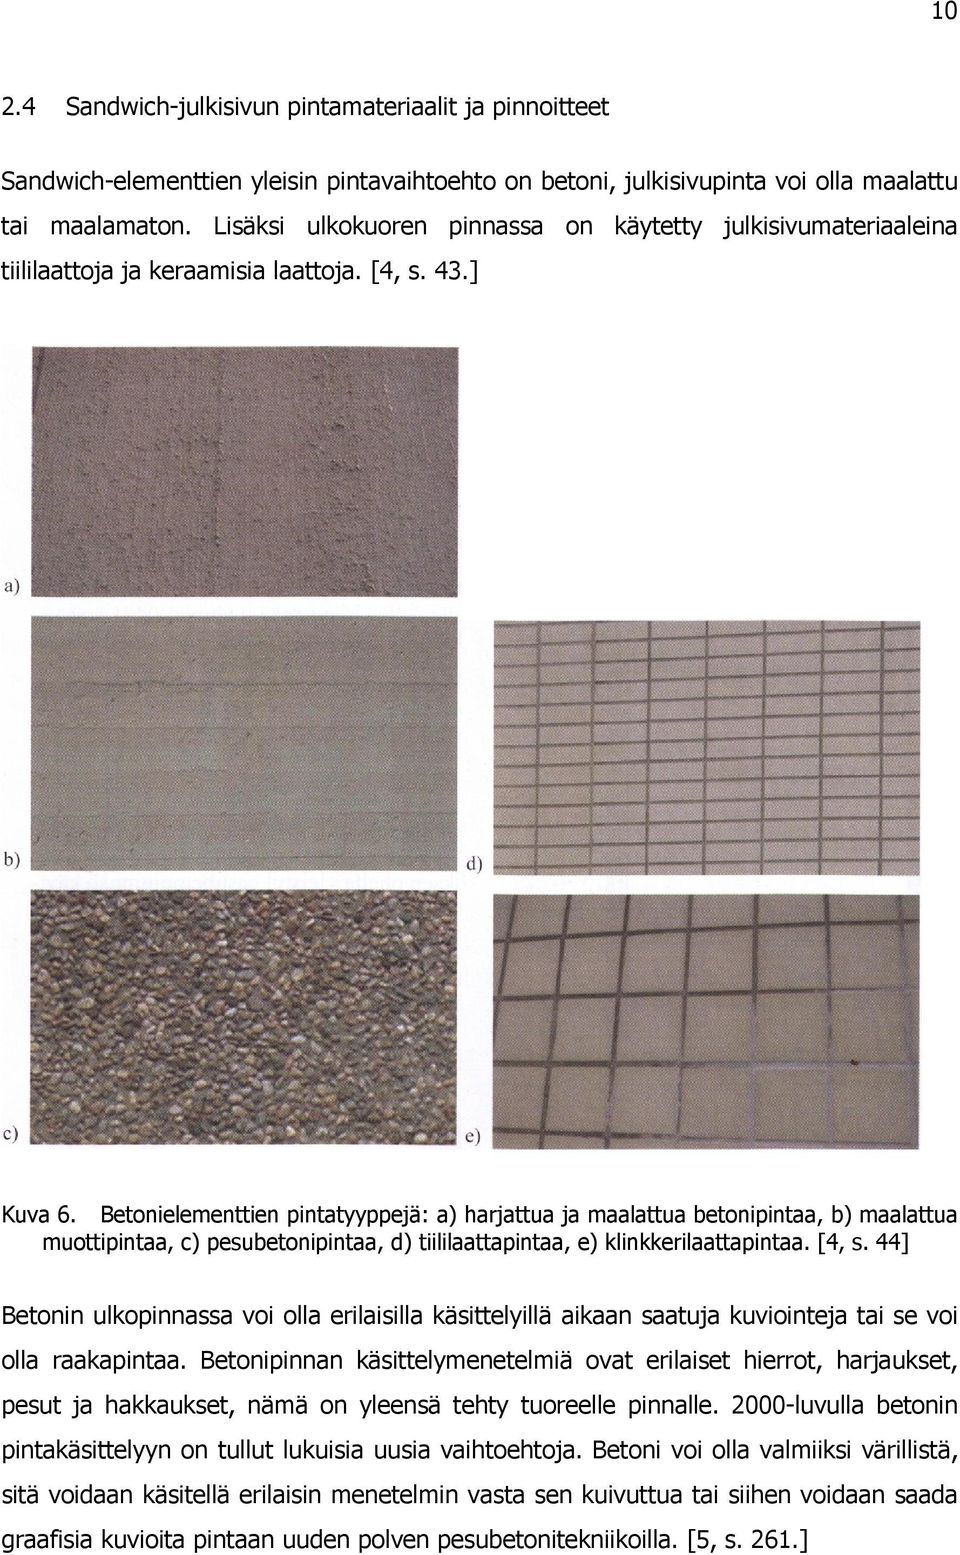 Betonielementtien pintatyyppejä: a) harjattua ja maalattua betonipintaa, b) maalattua muottipintaa, c) pesubetonipintaa, d) tiililaattapintaa, e) klinkkerilaattapintaa. [4, s.